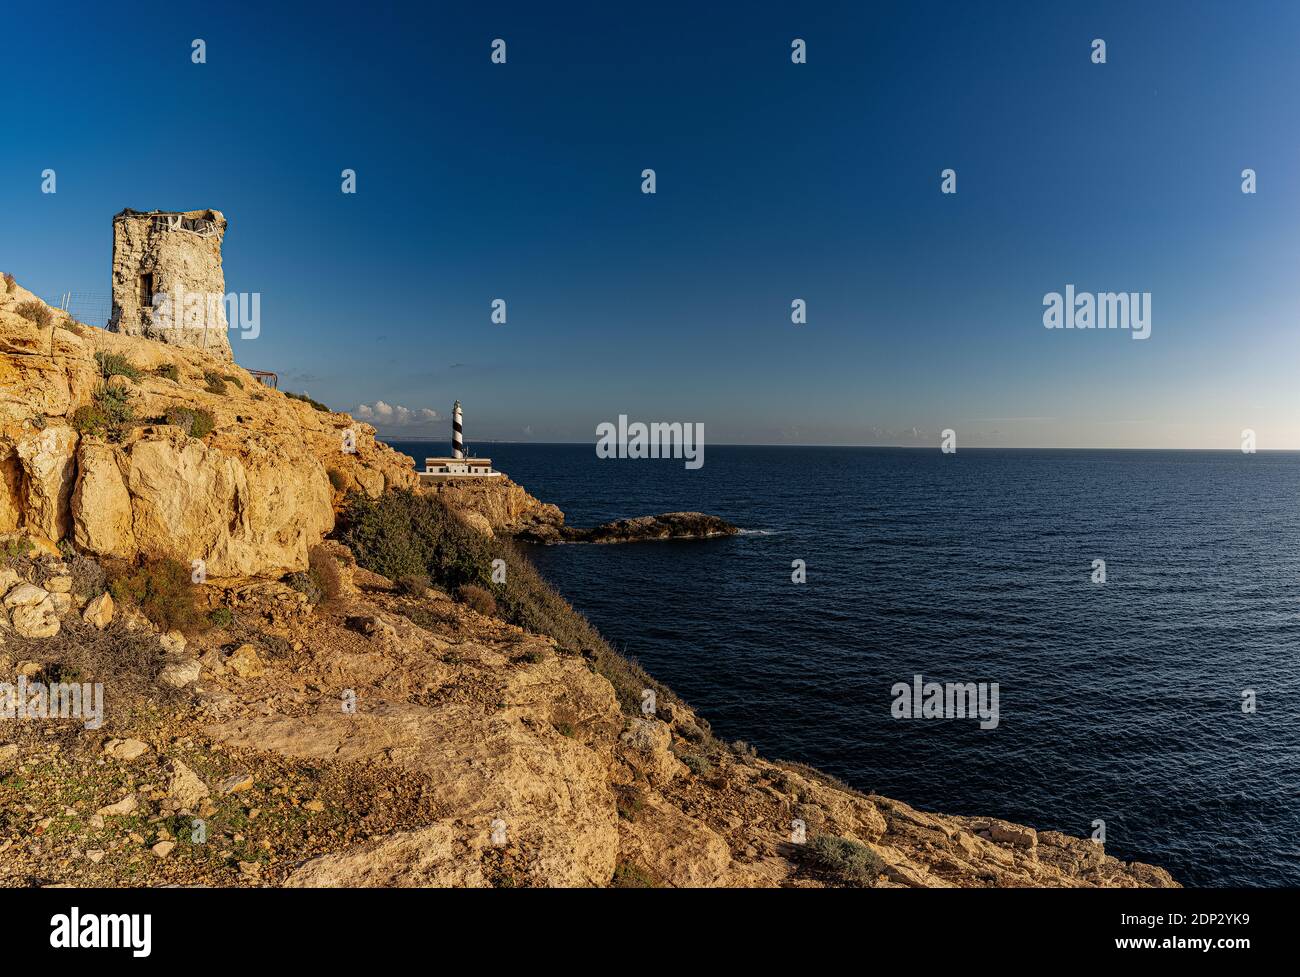 Imagen de la torre de defensa y el faro de Cala Figuera, en Calvia, Mallorca, España Foto de stock